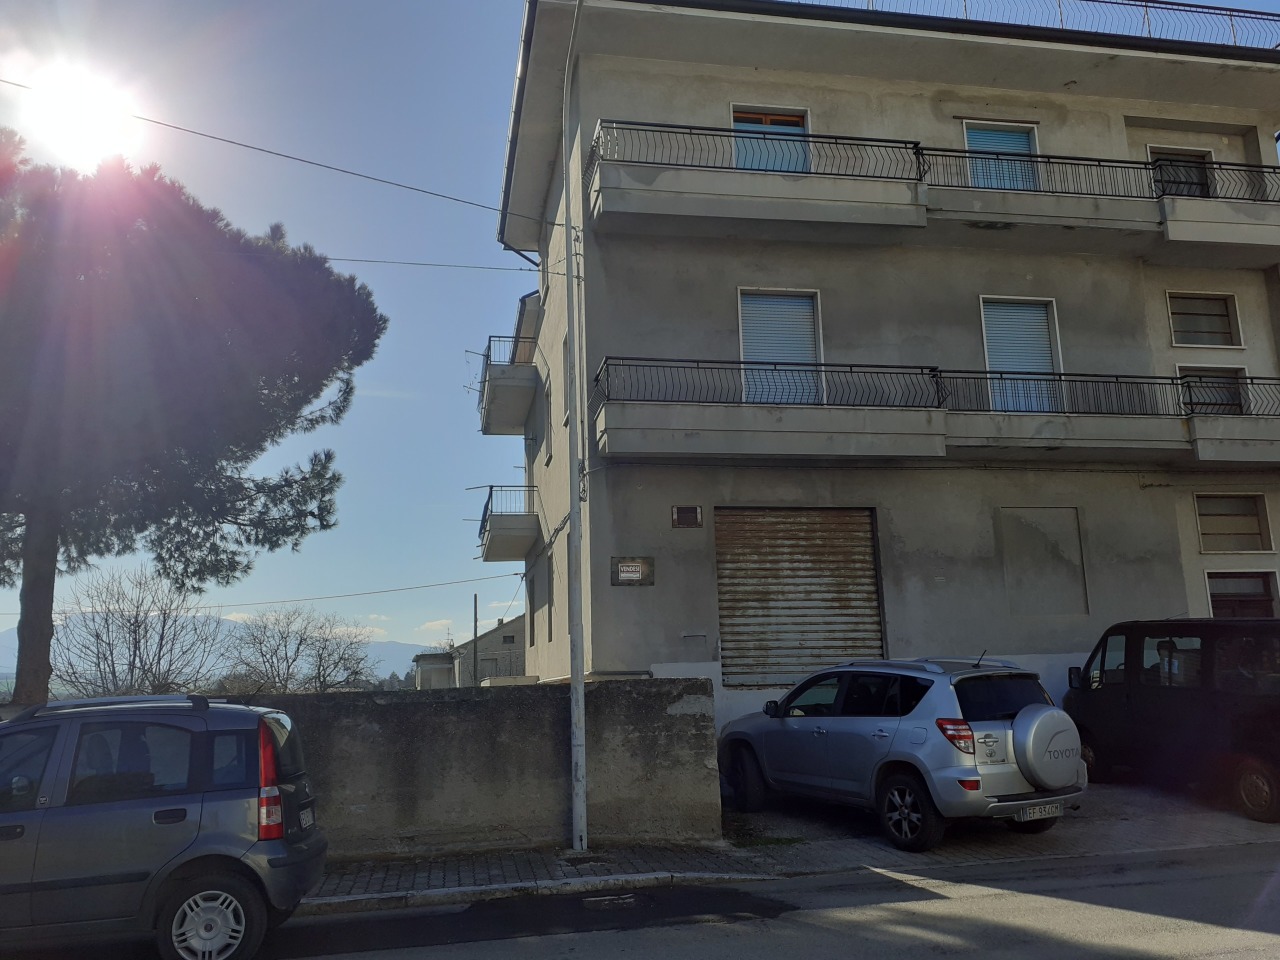 Appartamento in vendita a Monsampolo del Tronto, 9999 locali, prezzo € 50.000 | PortaleAgenzieImmobiliari.it